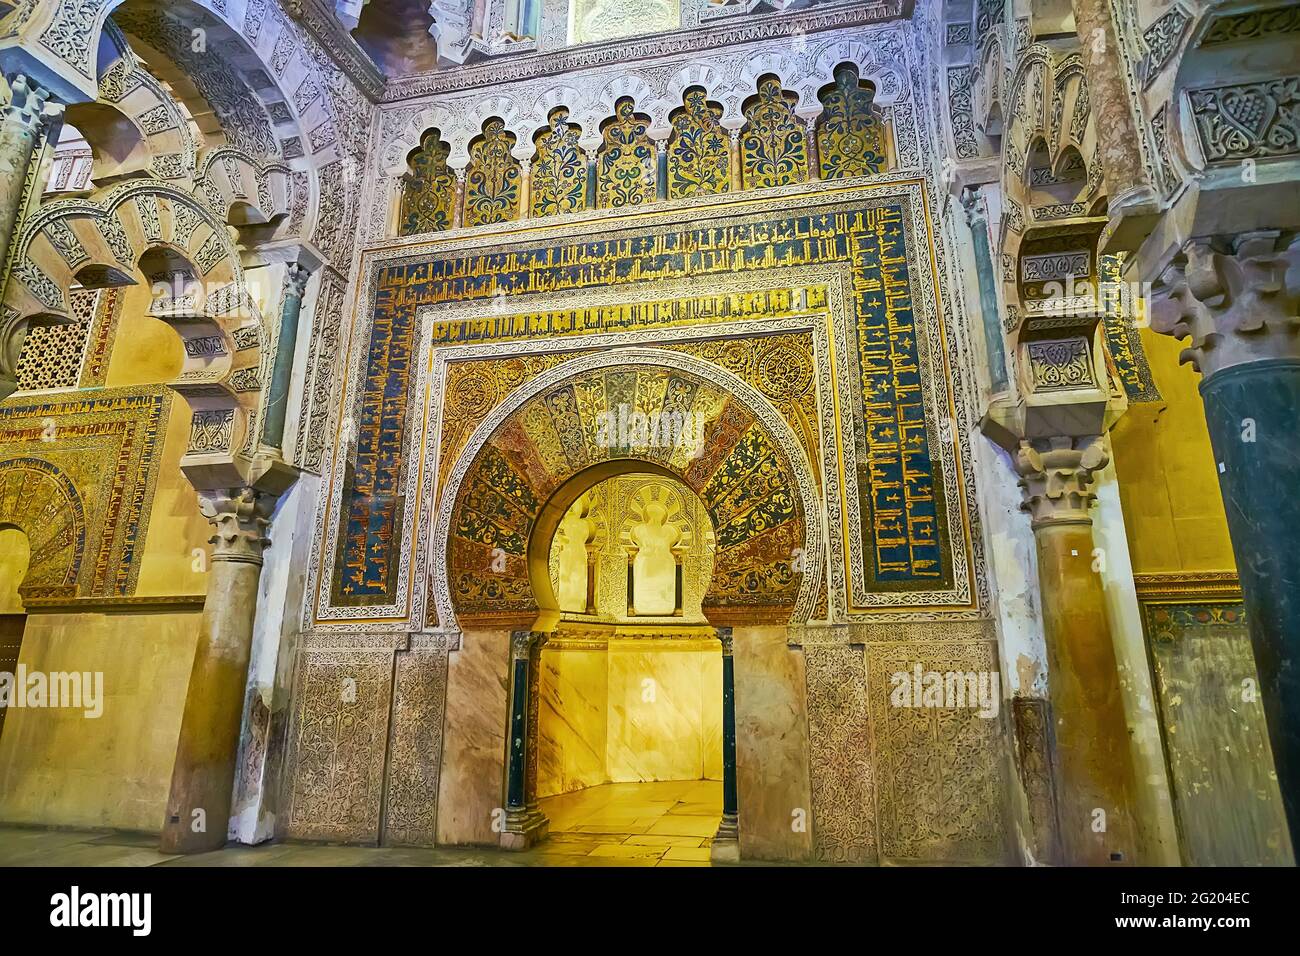 CORDOBA, SPANIEN - SEP 30, 2019: Das kunstvolle Mihrab in der Maqsura (Caliphs- oder Emir-Gebetszone) von Mezquita mit Mosaiken, Kufic-Skriptinschriften, bli Stockfoto